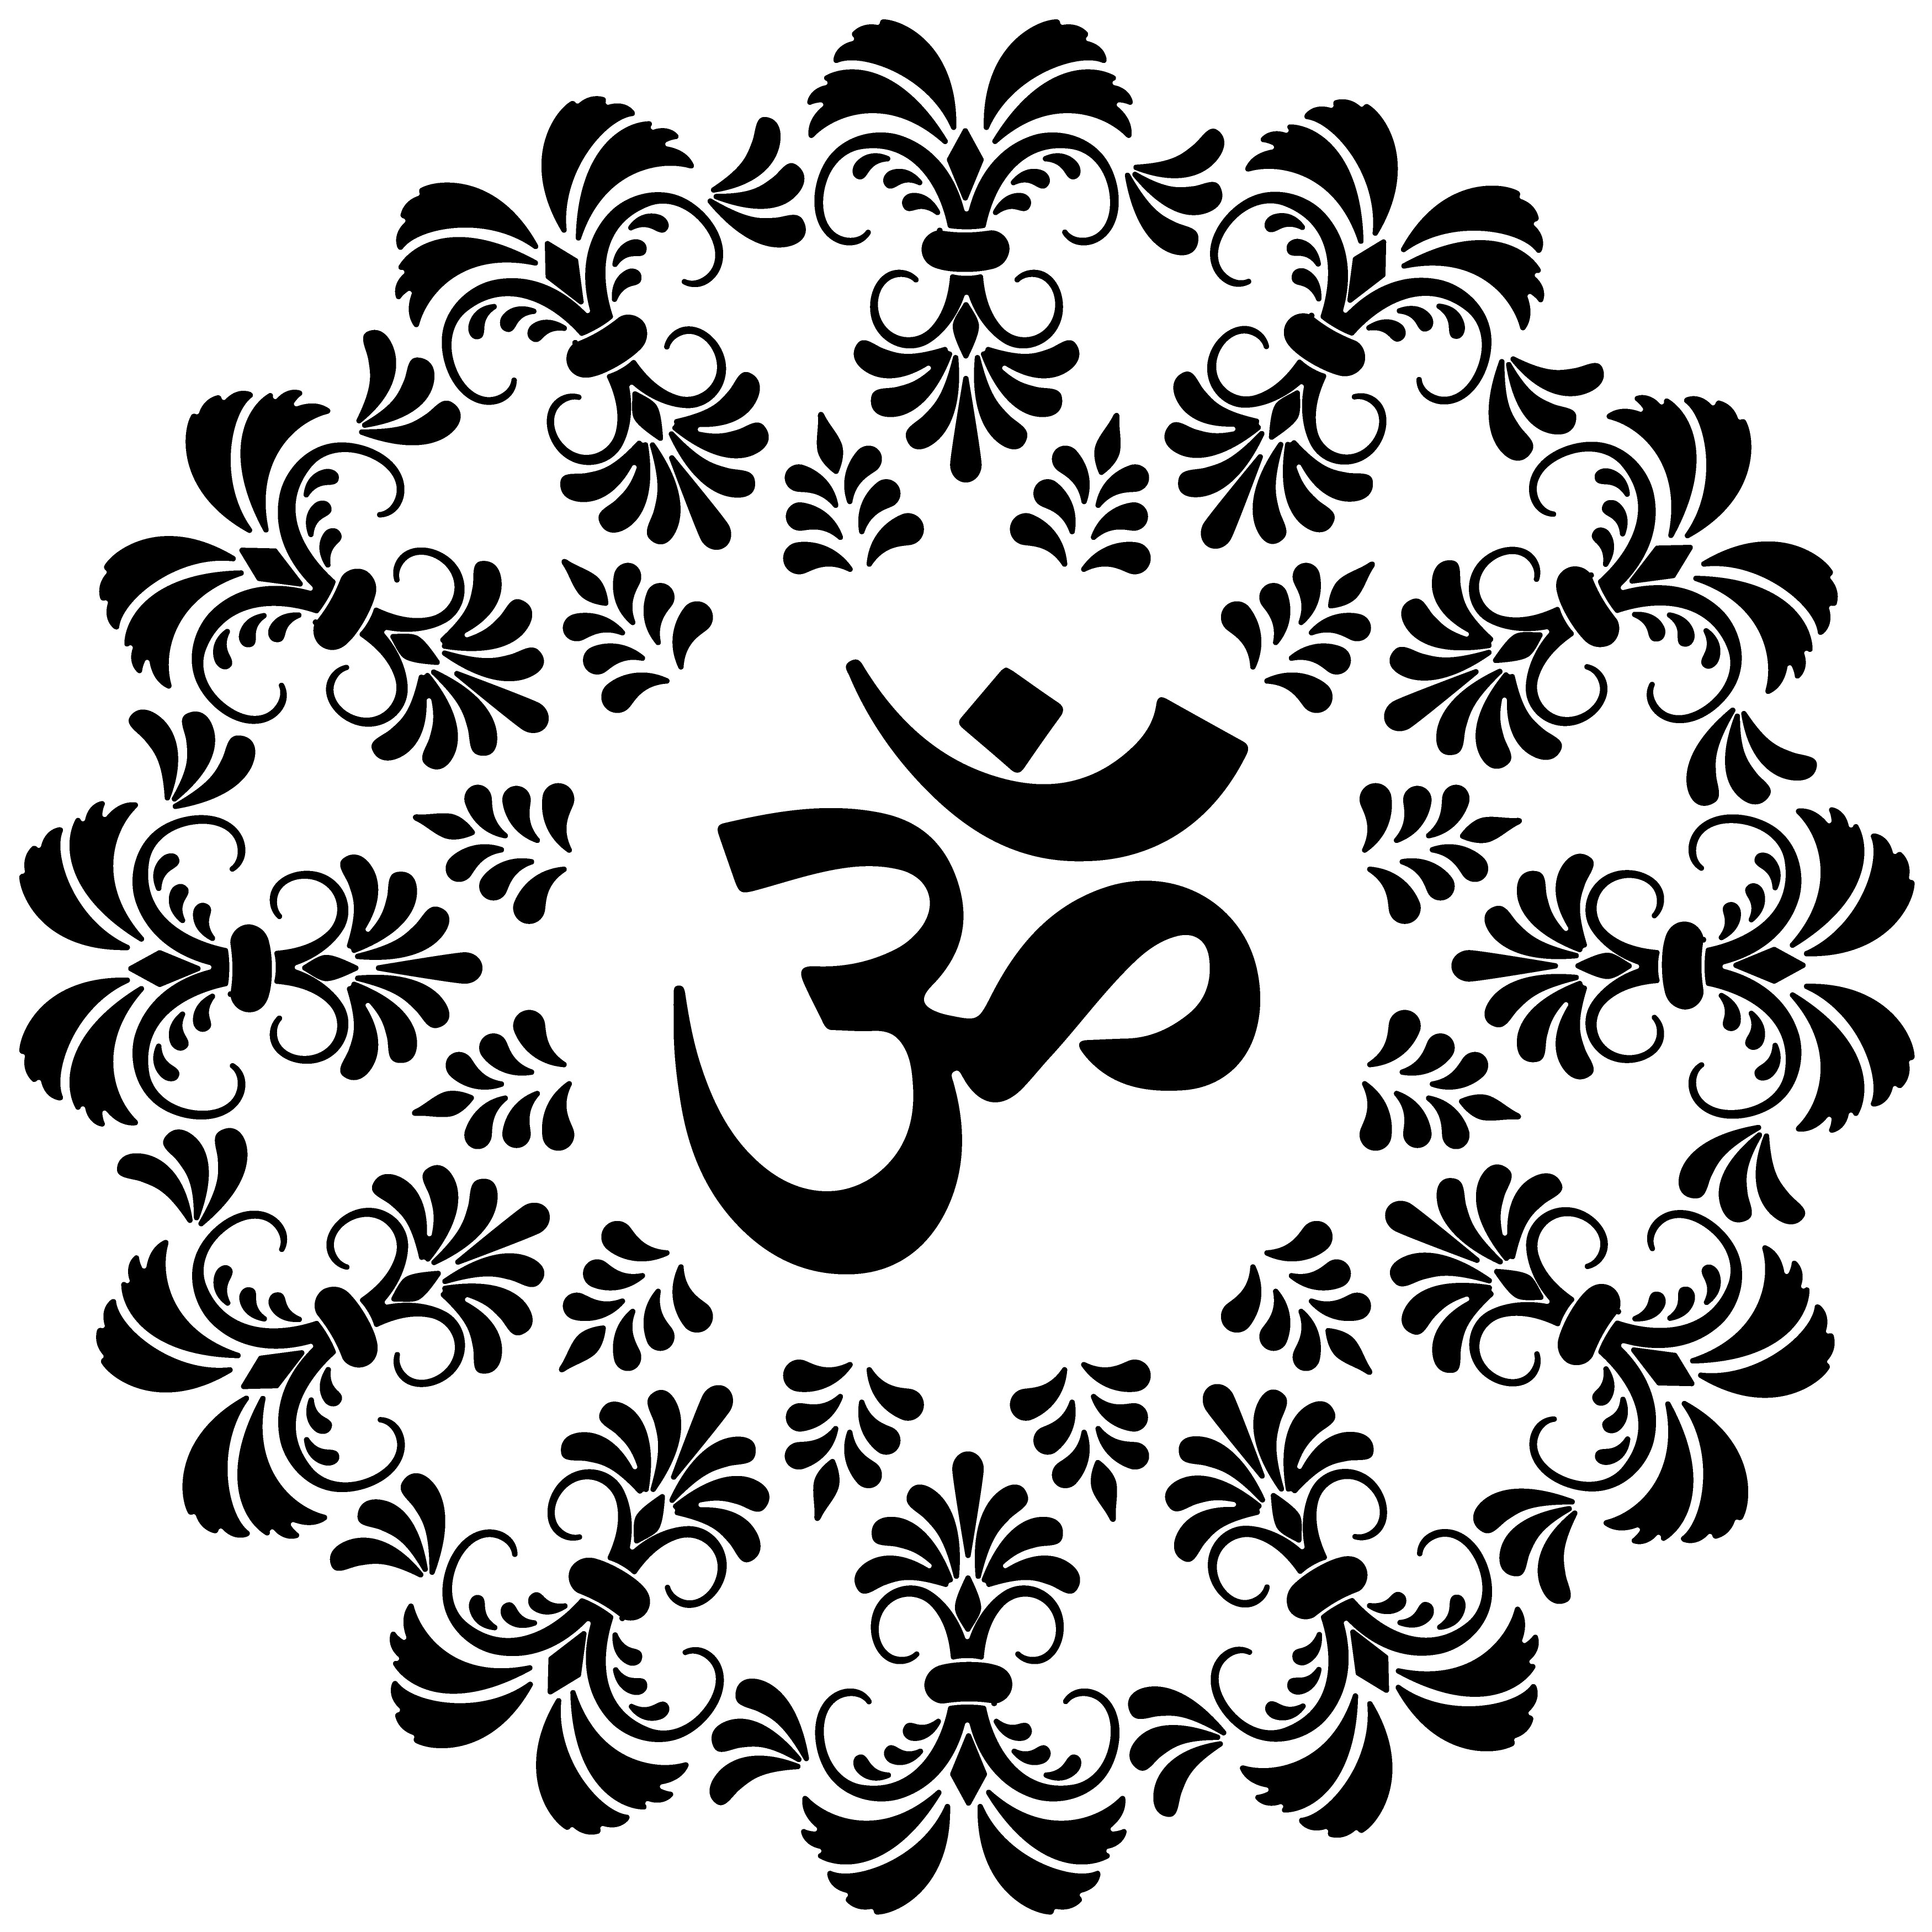 Om Aufkleber 4x4 cm Farbauswahl Hinduismus Zeichen Indien Yoga Symbol (4)